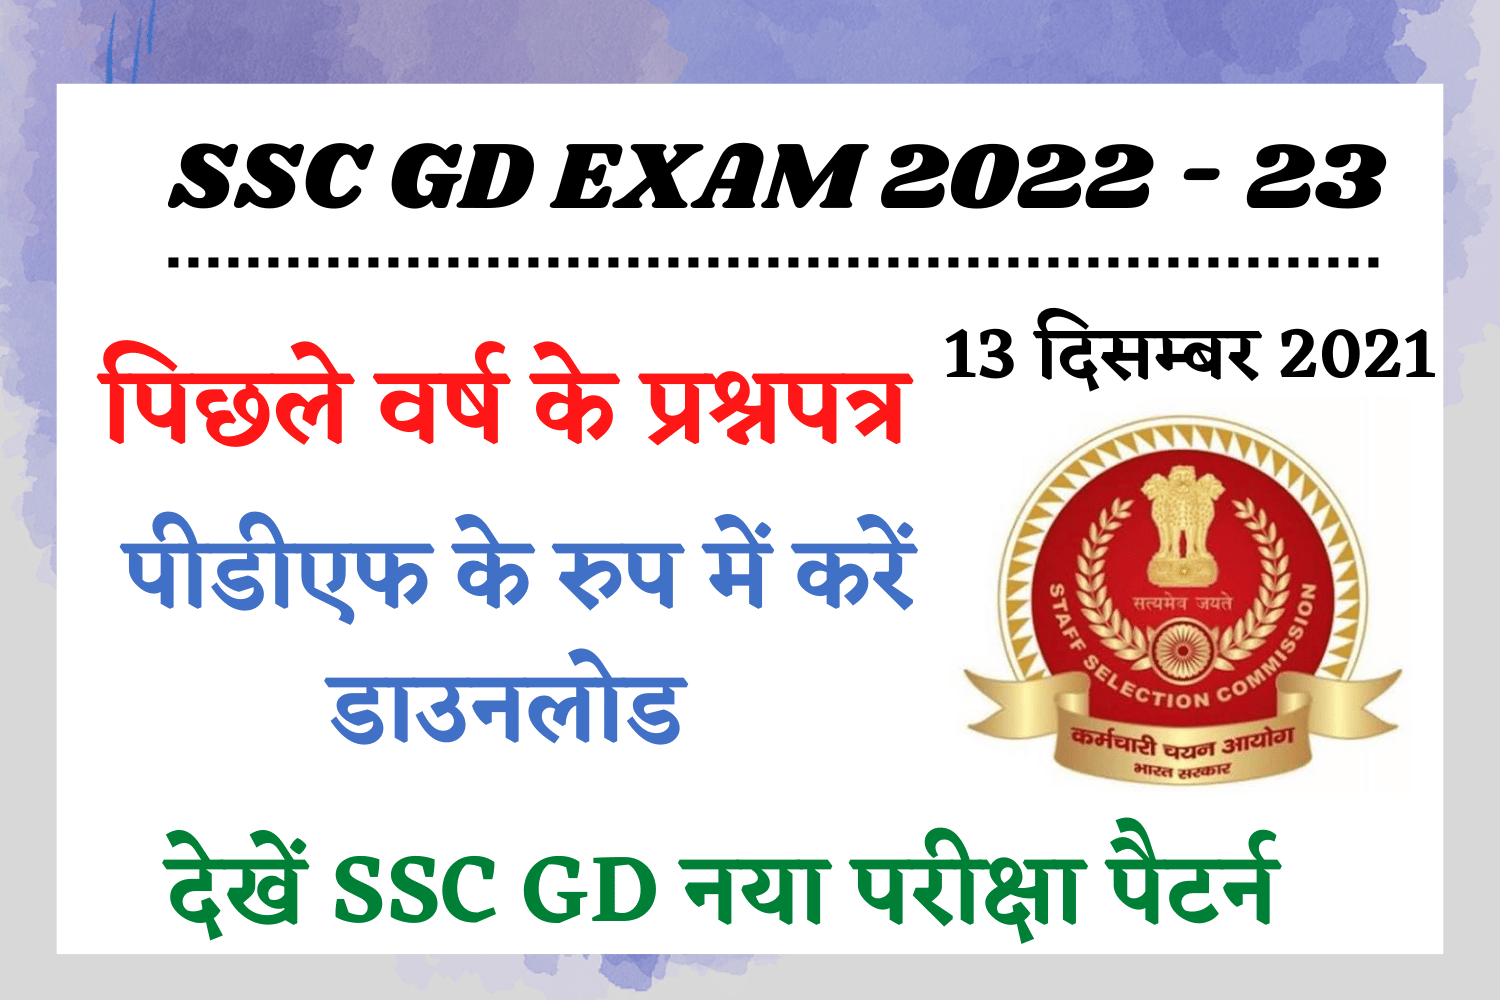 SSC GD Previous Year Paper PDF Download : एसएससी जीडी परीक्षा 2021 का प्रश्नपत्र हिंदी में पीडीएफ के रुप में डाउनलोड करें